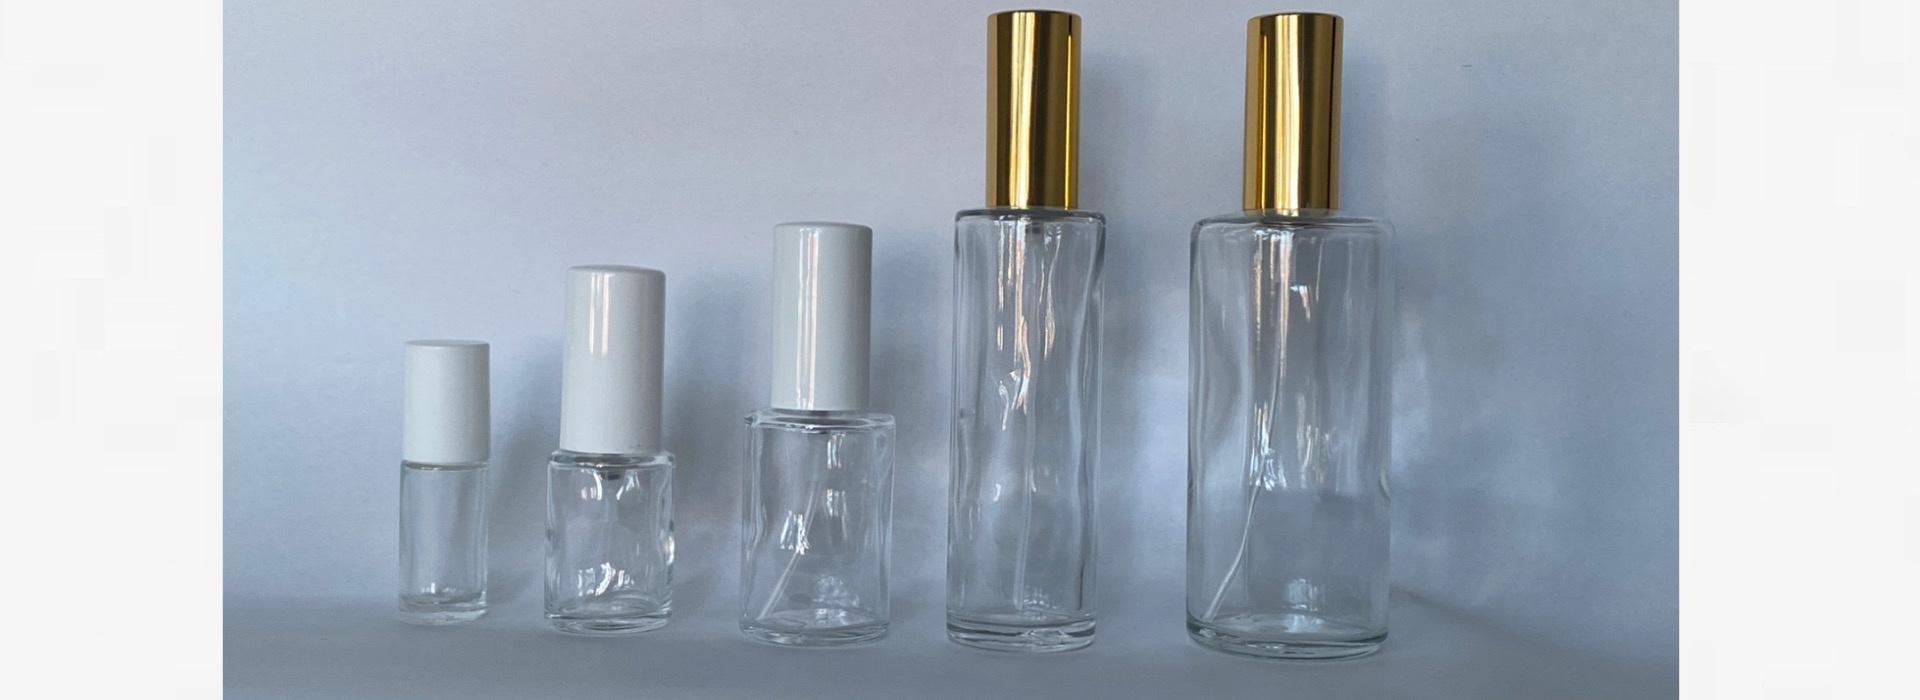 Sticlute pentru parfum